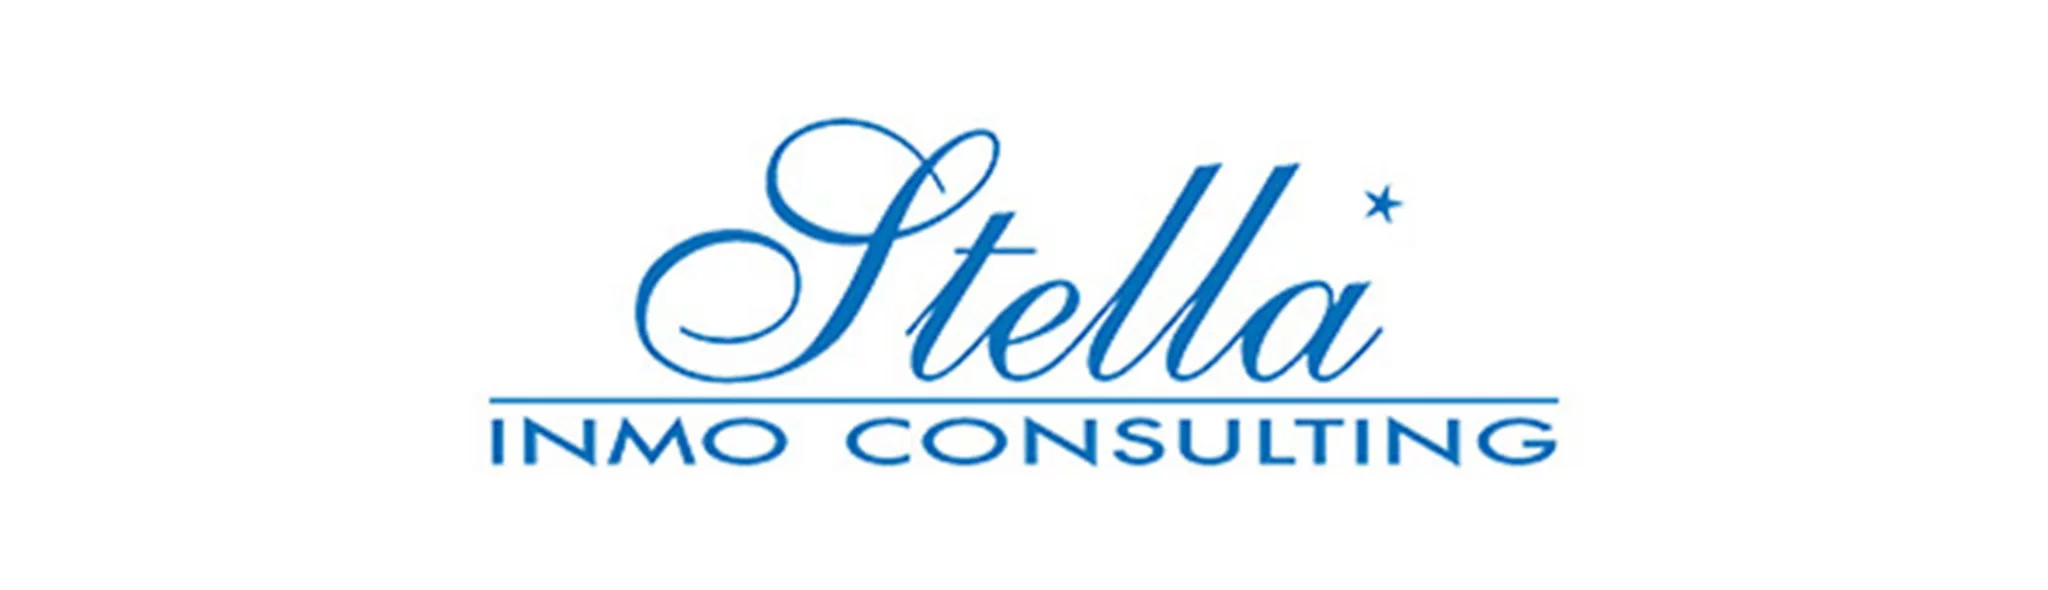 Logotipo Stella Inmo Consulting